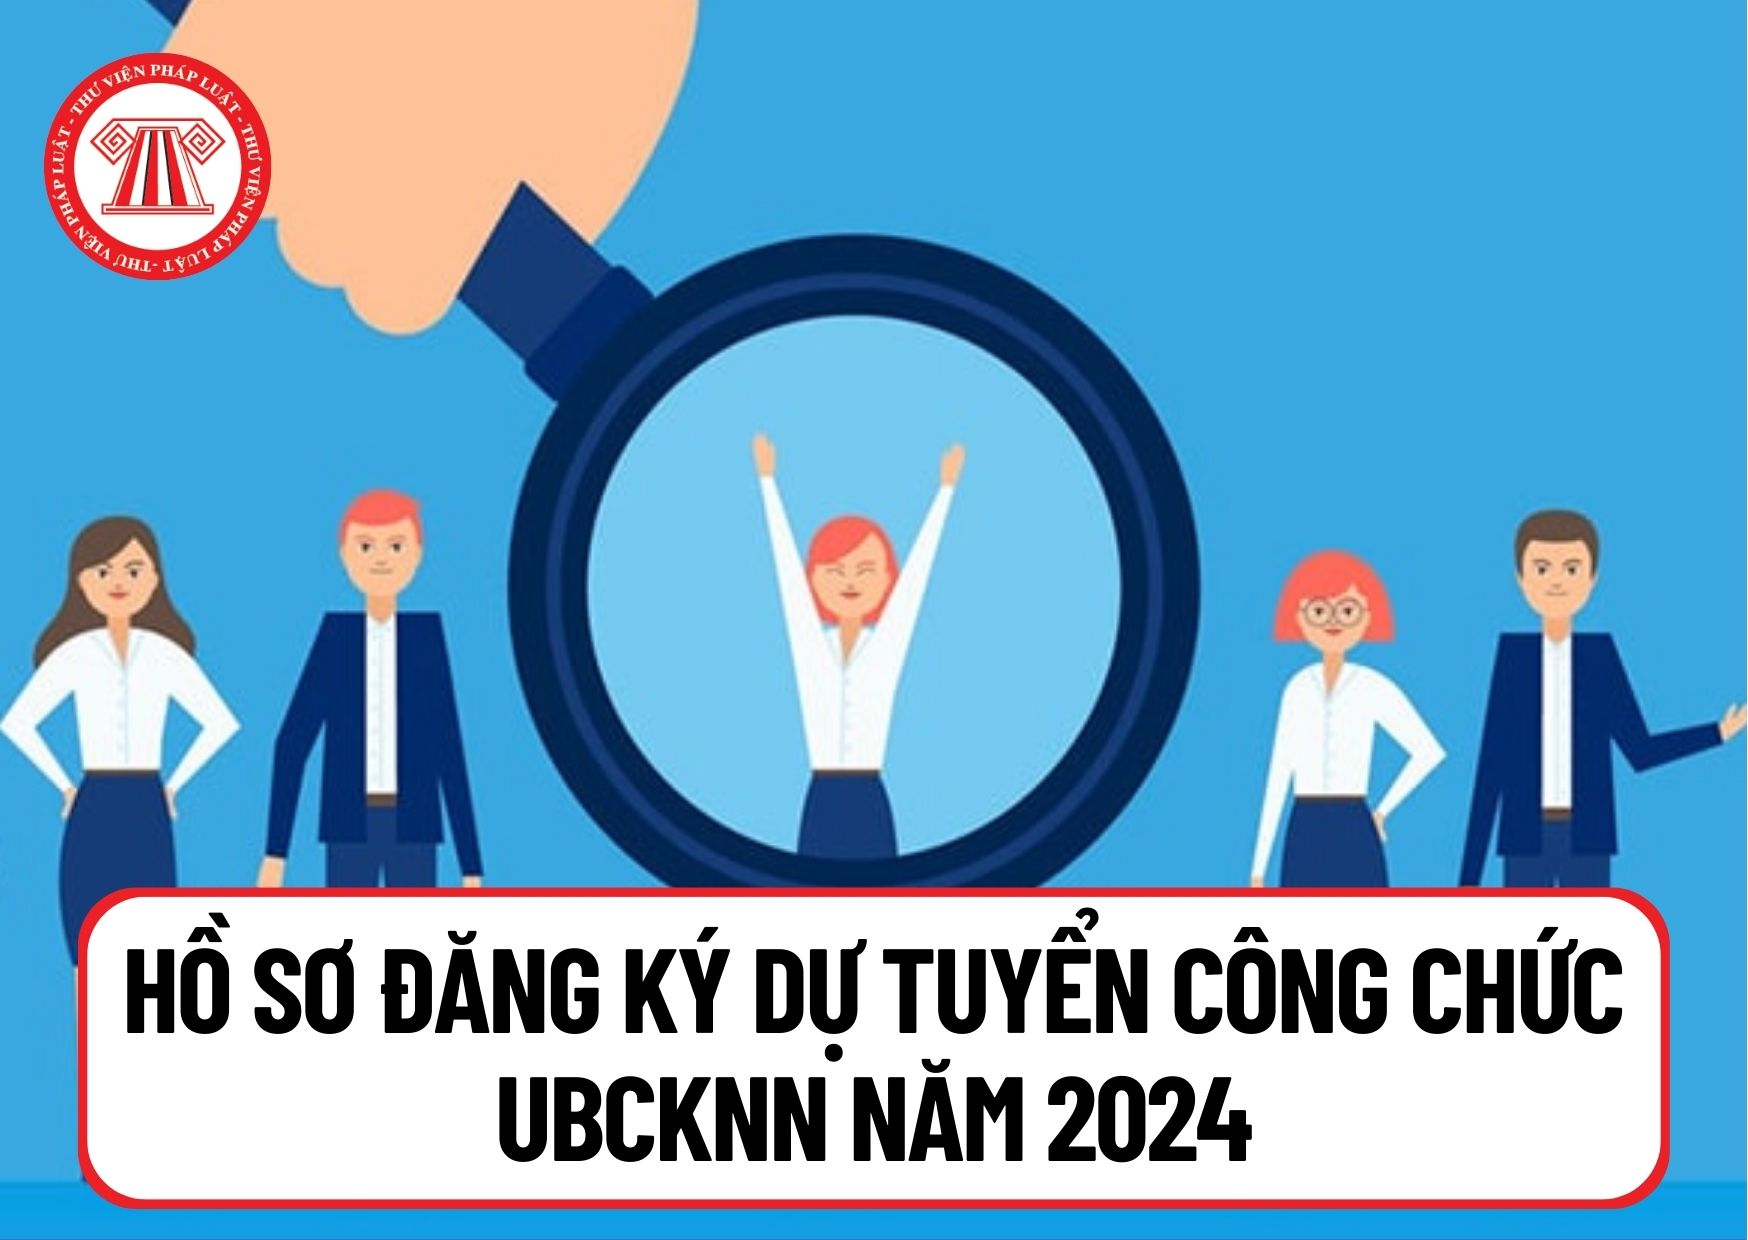 Hồ sơ đăng ký dự tuyển công chức UBCKNN năm 2024 gồm những gì? Tải mẫu phiếu đăng ký dự tuyển công chức tại đâu?